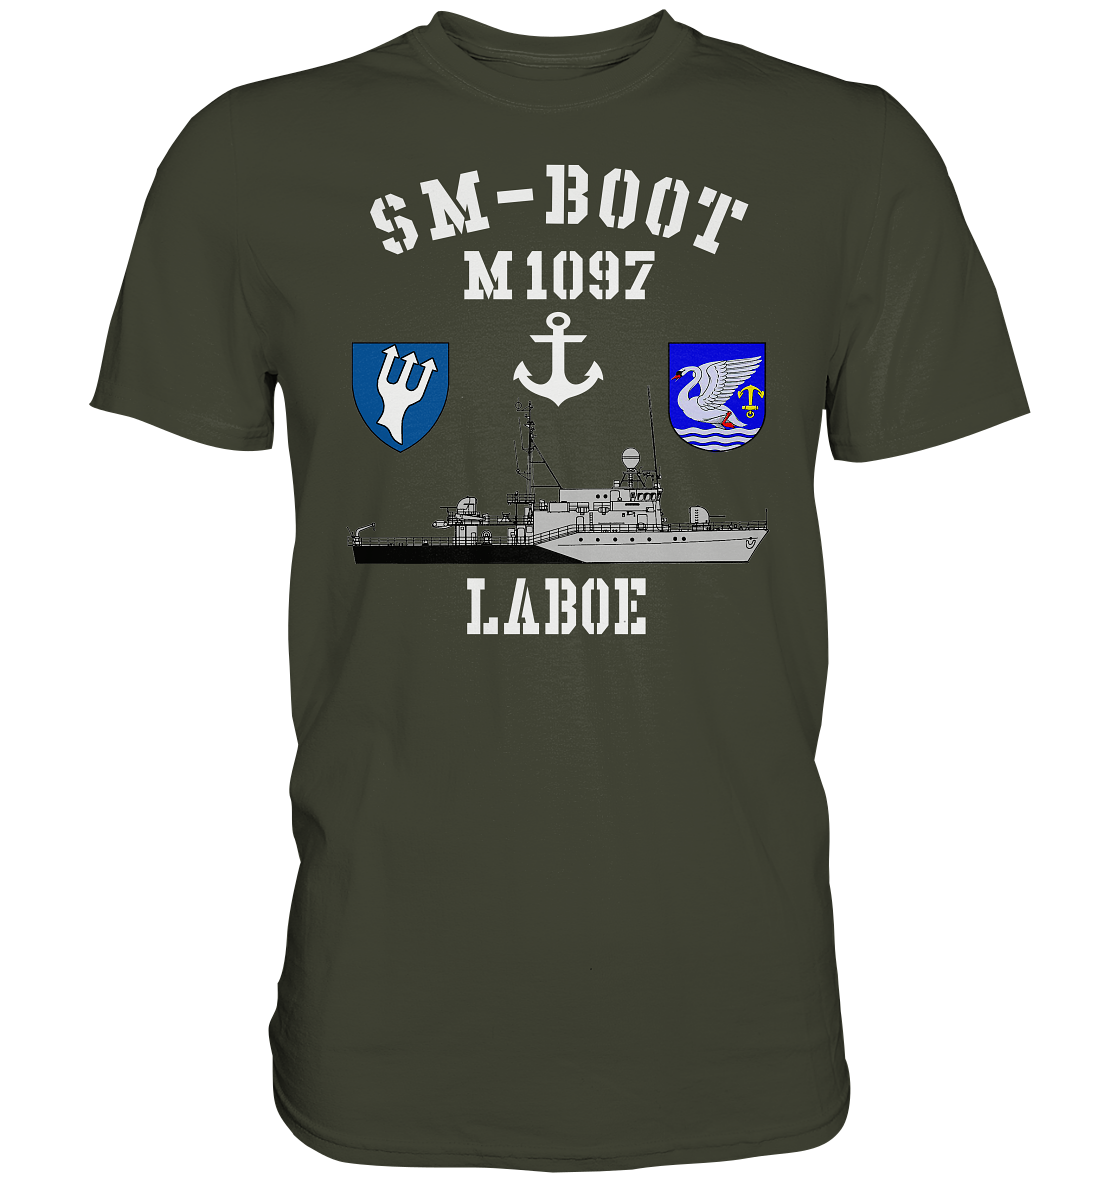 SM-Boot M1097 LABOE Anker - Premium Shirt